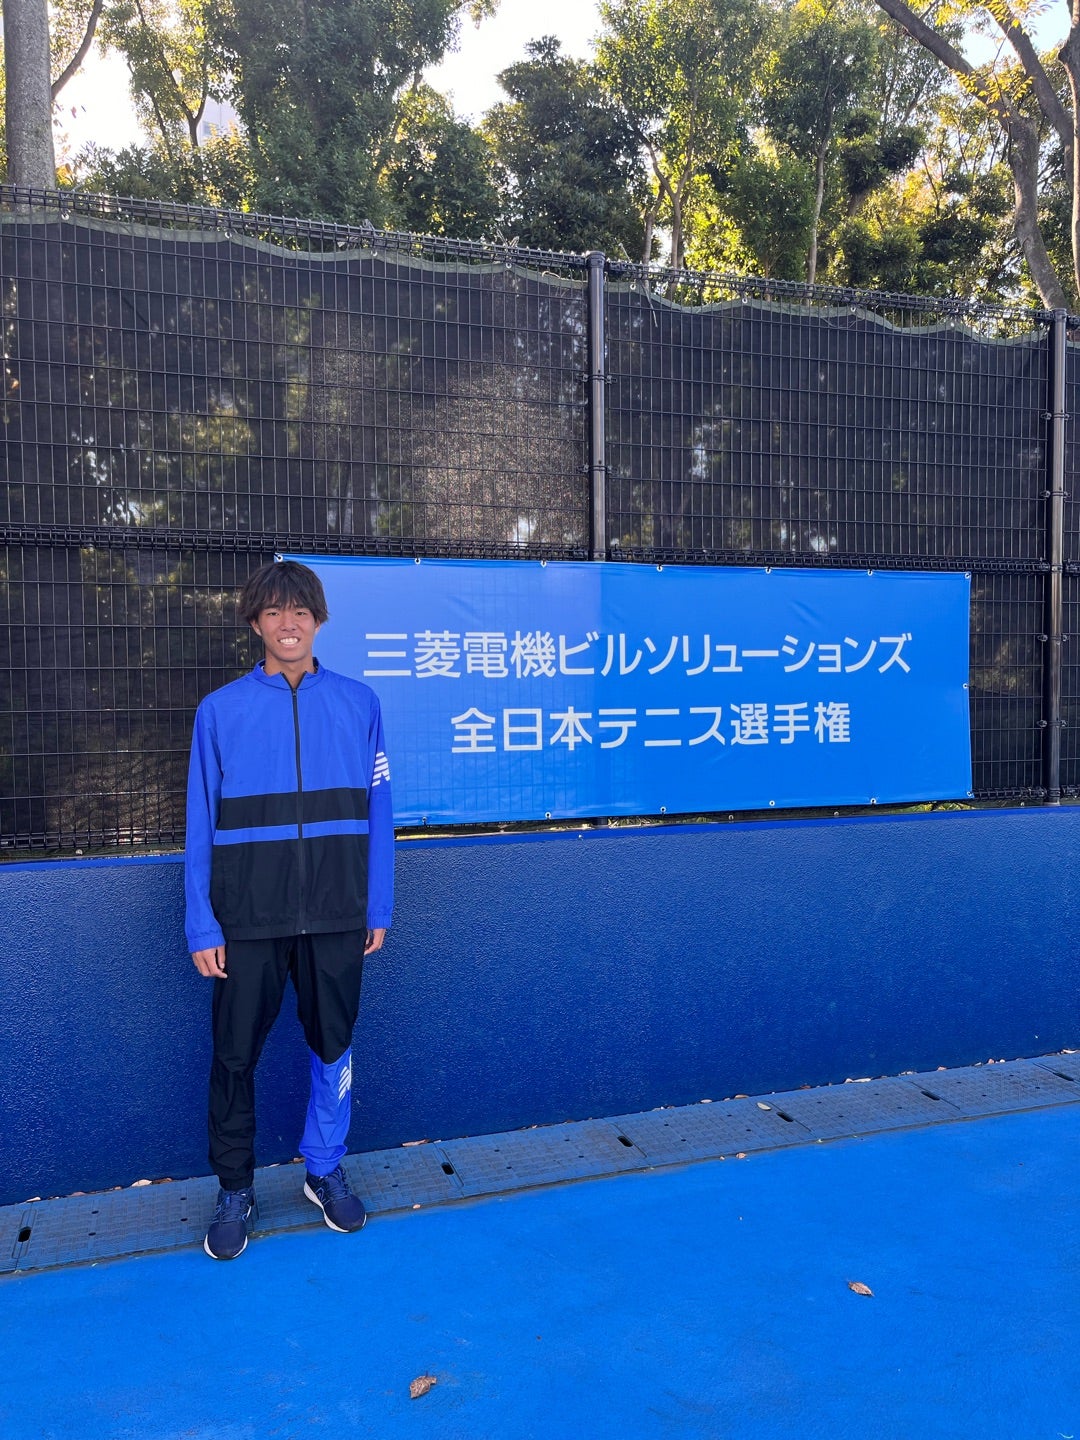 全日本テニス選手権【中大テニスのブログ】